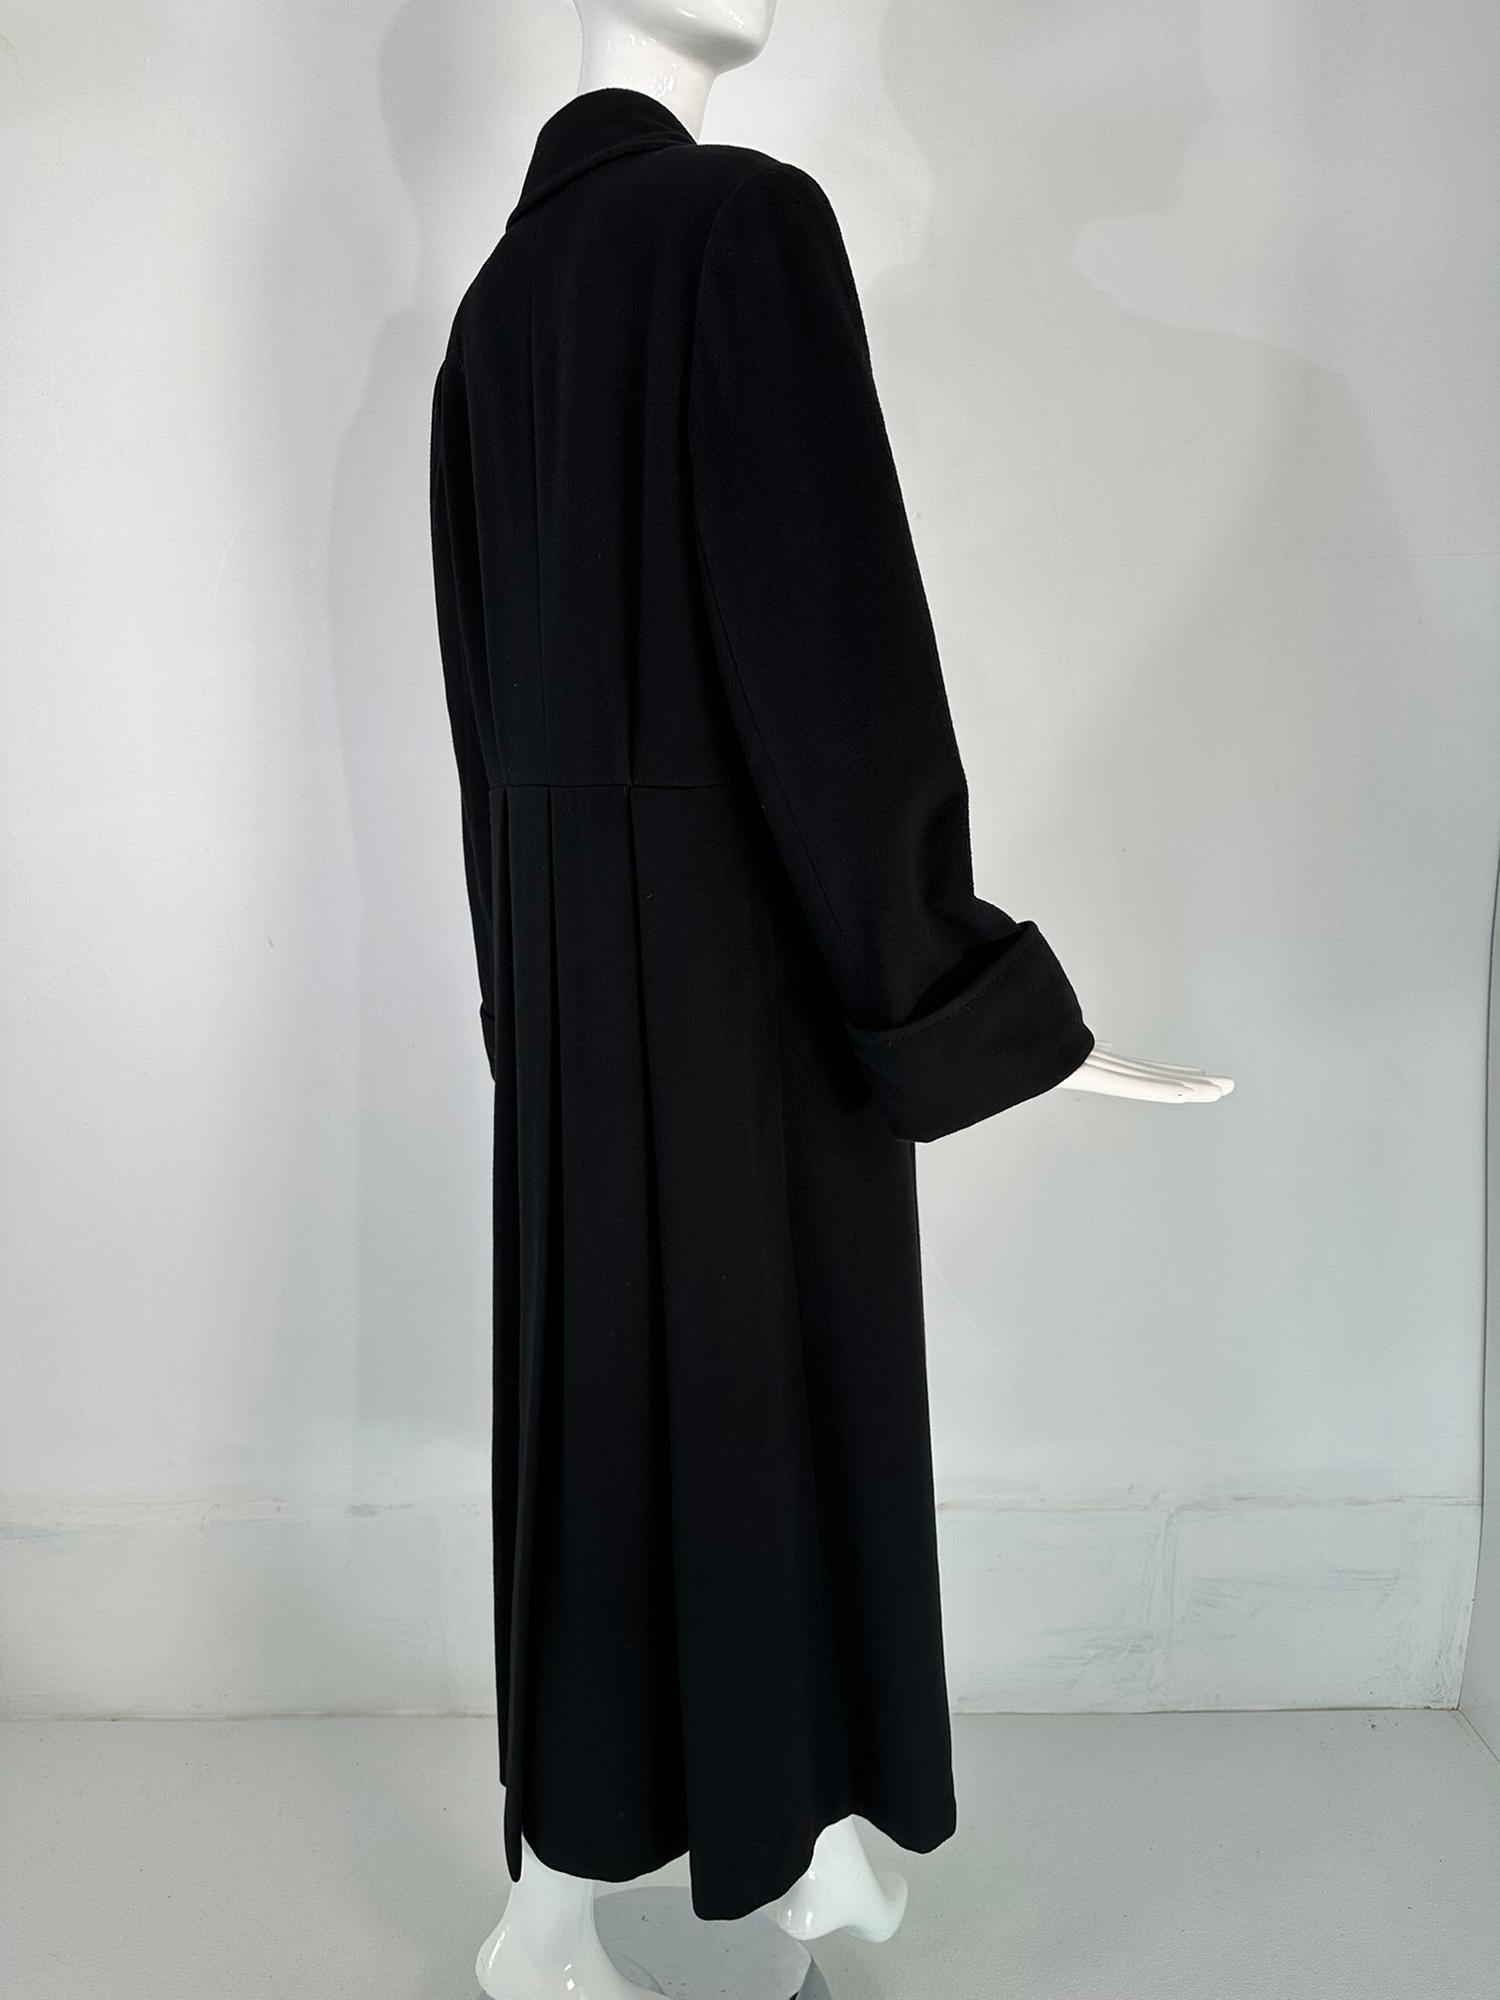 Bergdorf Goodman Black Cashmere Over Coat Deep Center Hem Vent  For Sale 1